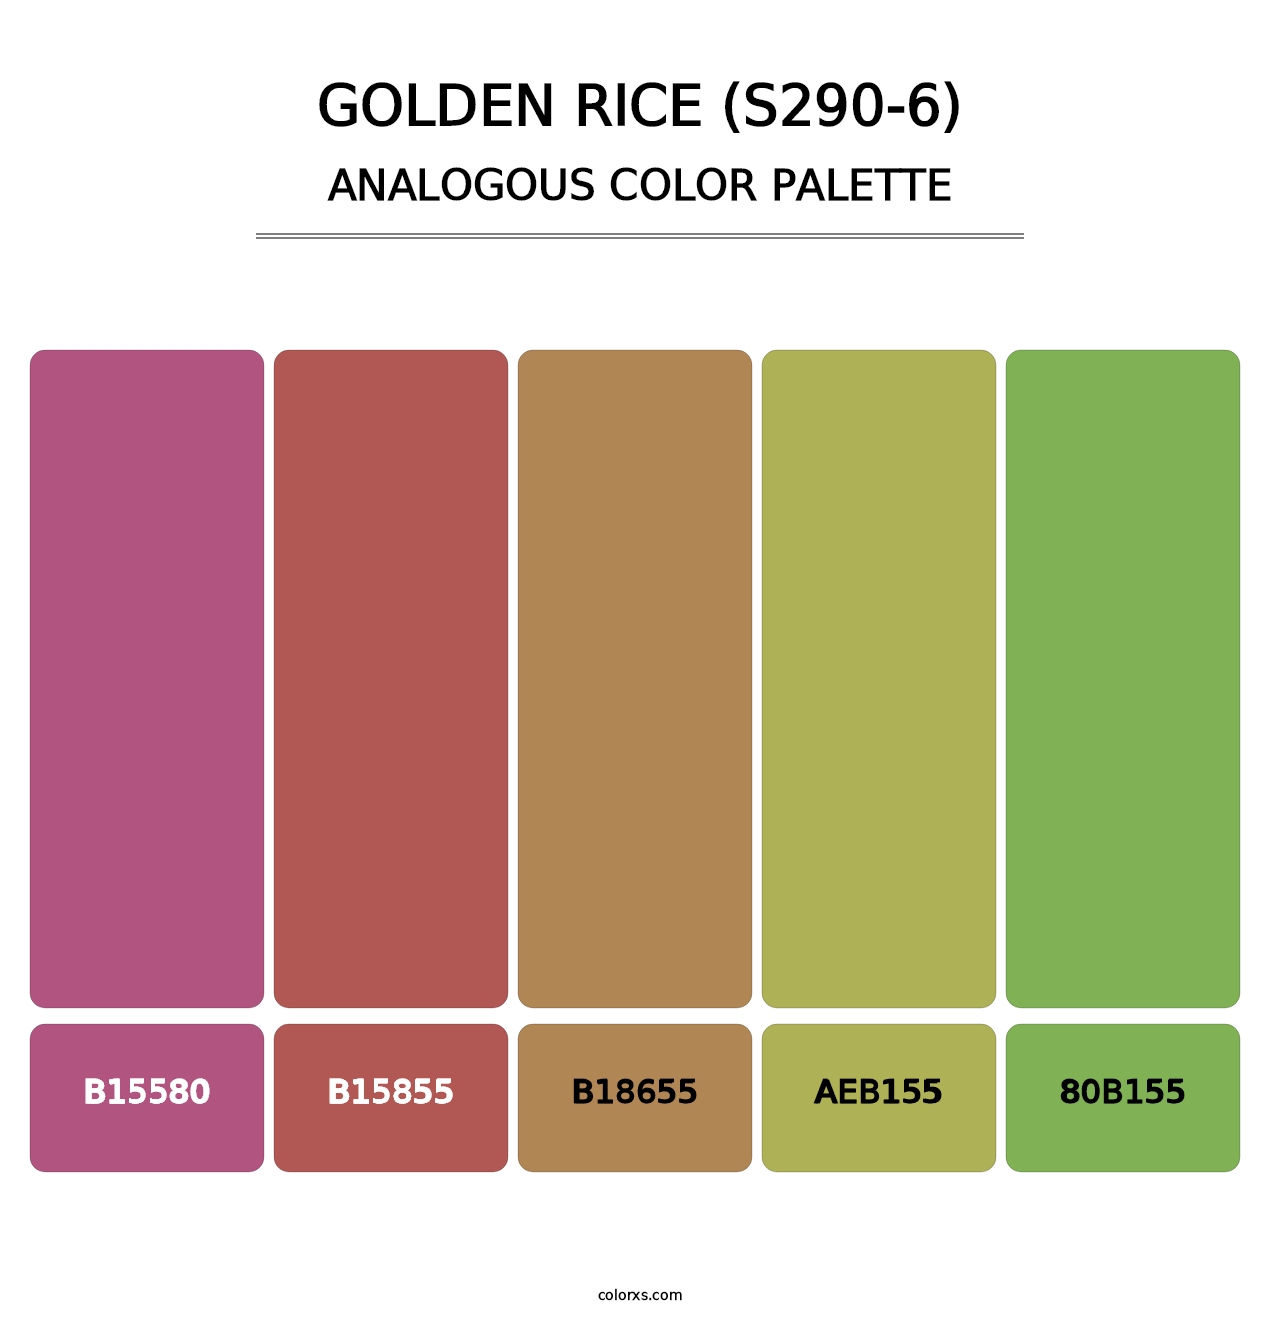 Golden Rice (S290-6) - Analogous Color Palette